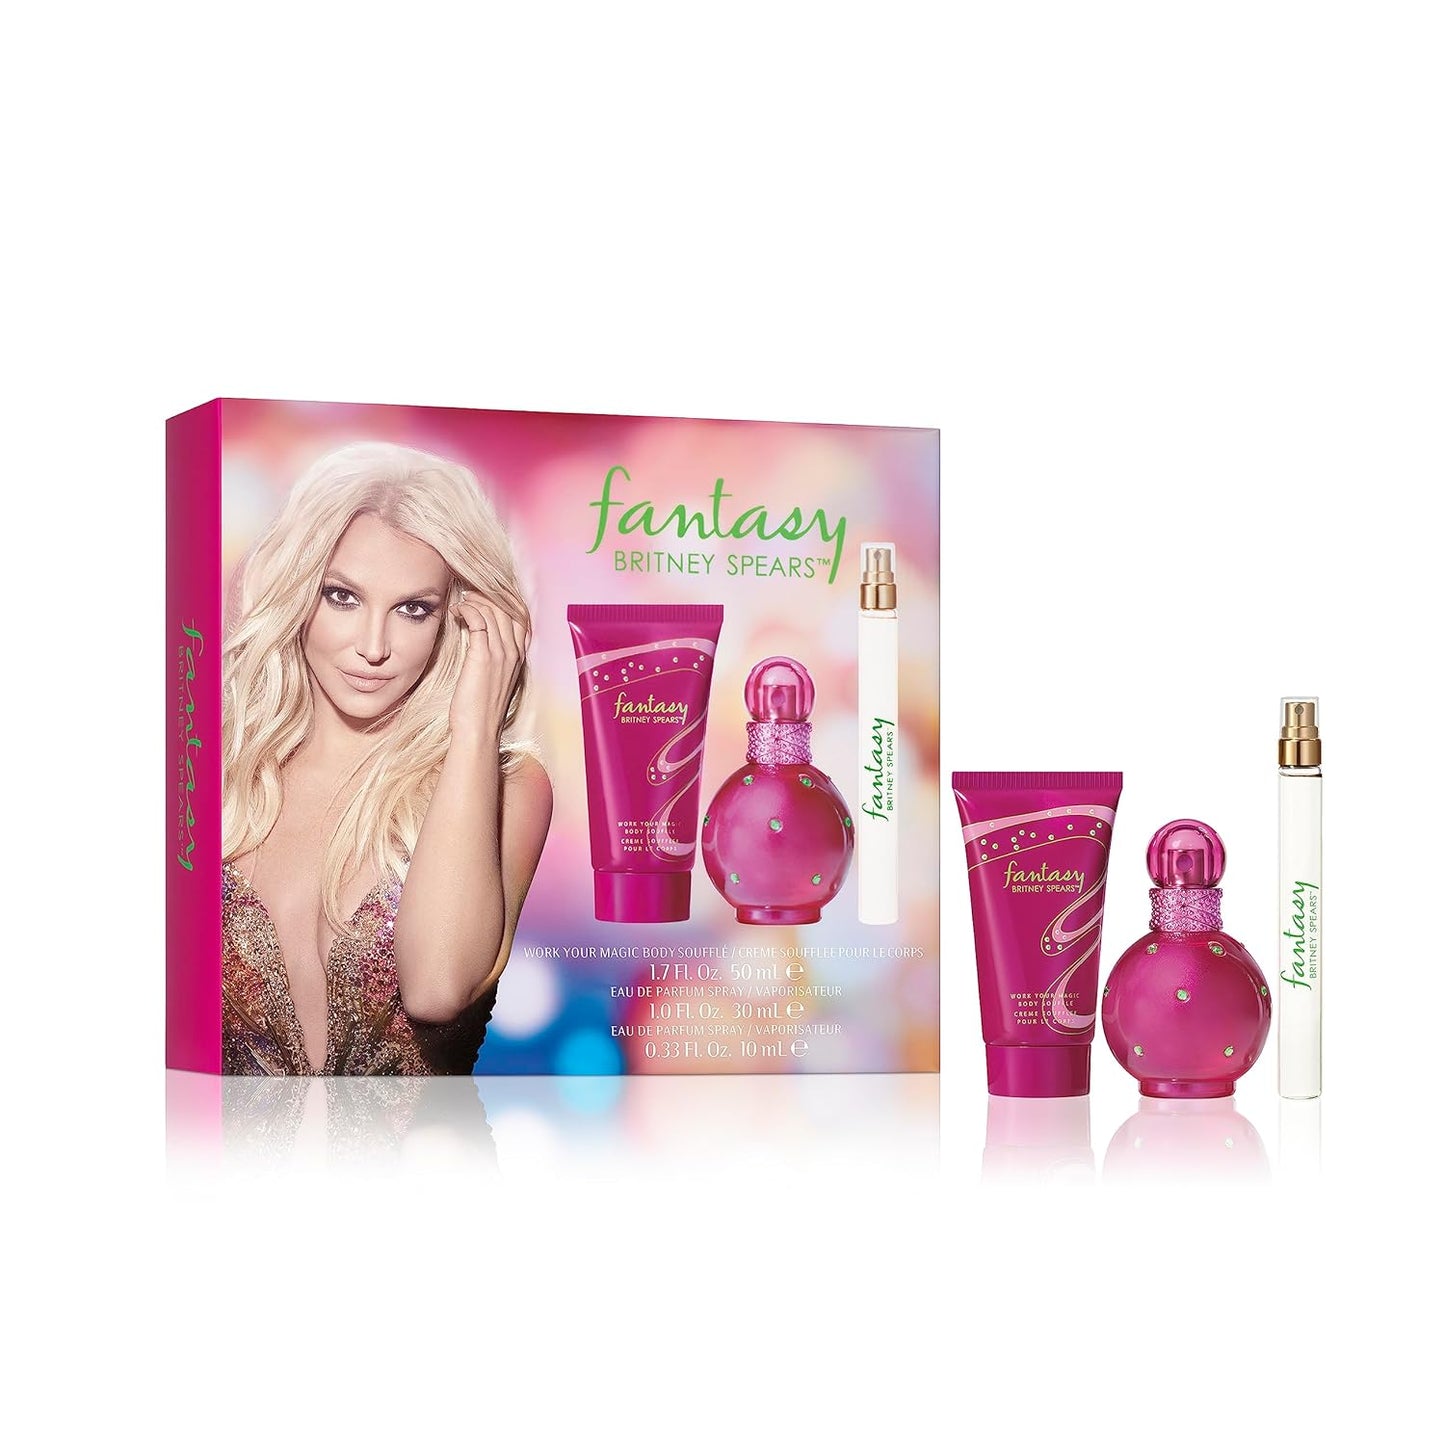 Britney Spears Fantasy, Eau De Parfum EDP Spray for Women, 1 Fl Oz - Premium Eau de Parfum from Concordia Style Boutique - Just $21.21! Shop now at Concordia Style Boutique